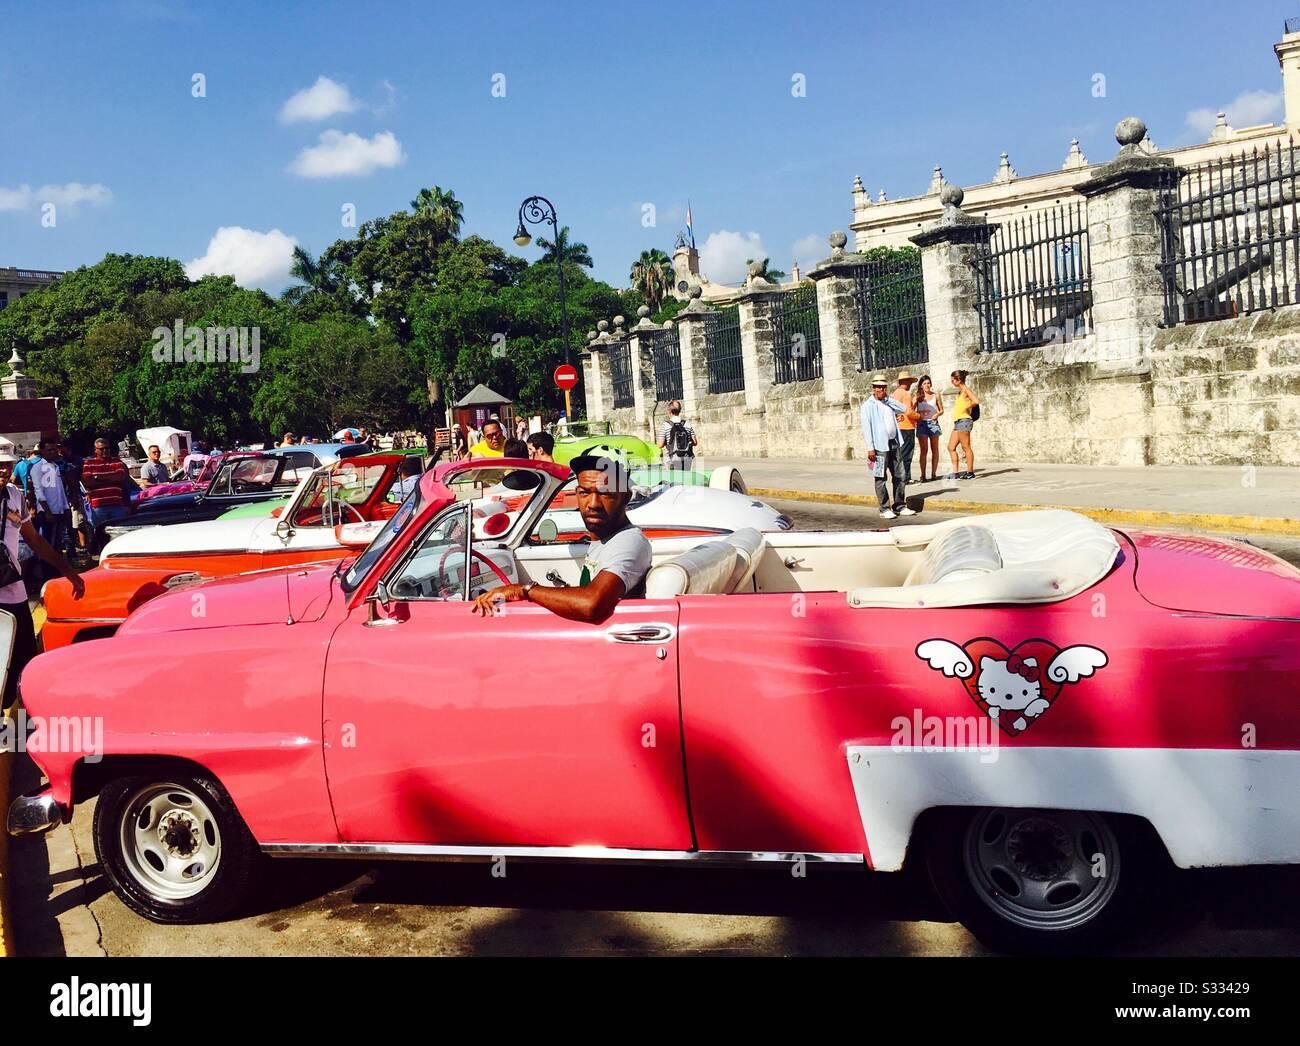 Belles et élégantes voitures américaines des années 1950 à la Havane, Cuba. Banque D'Images